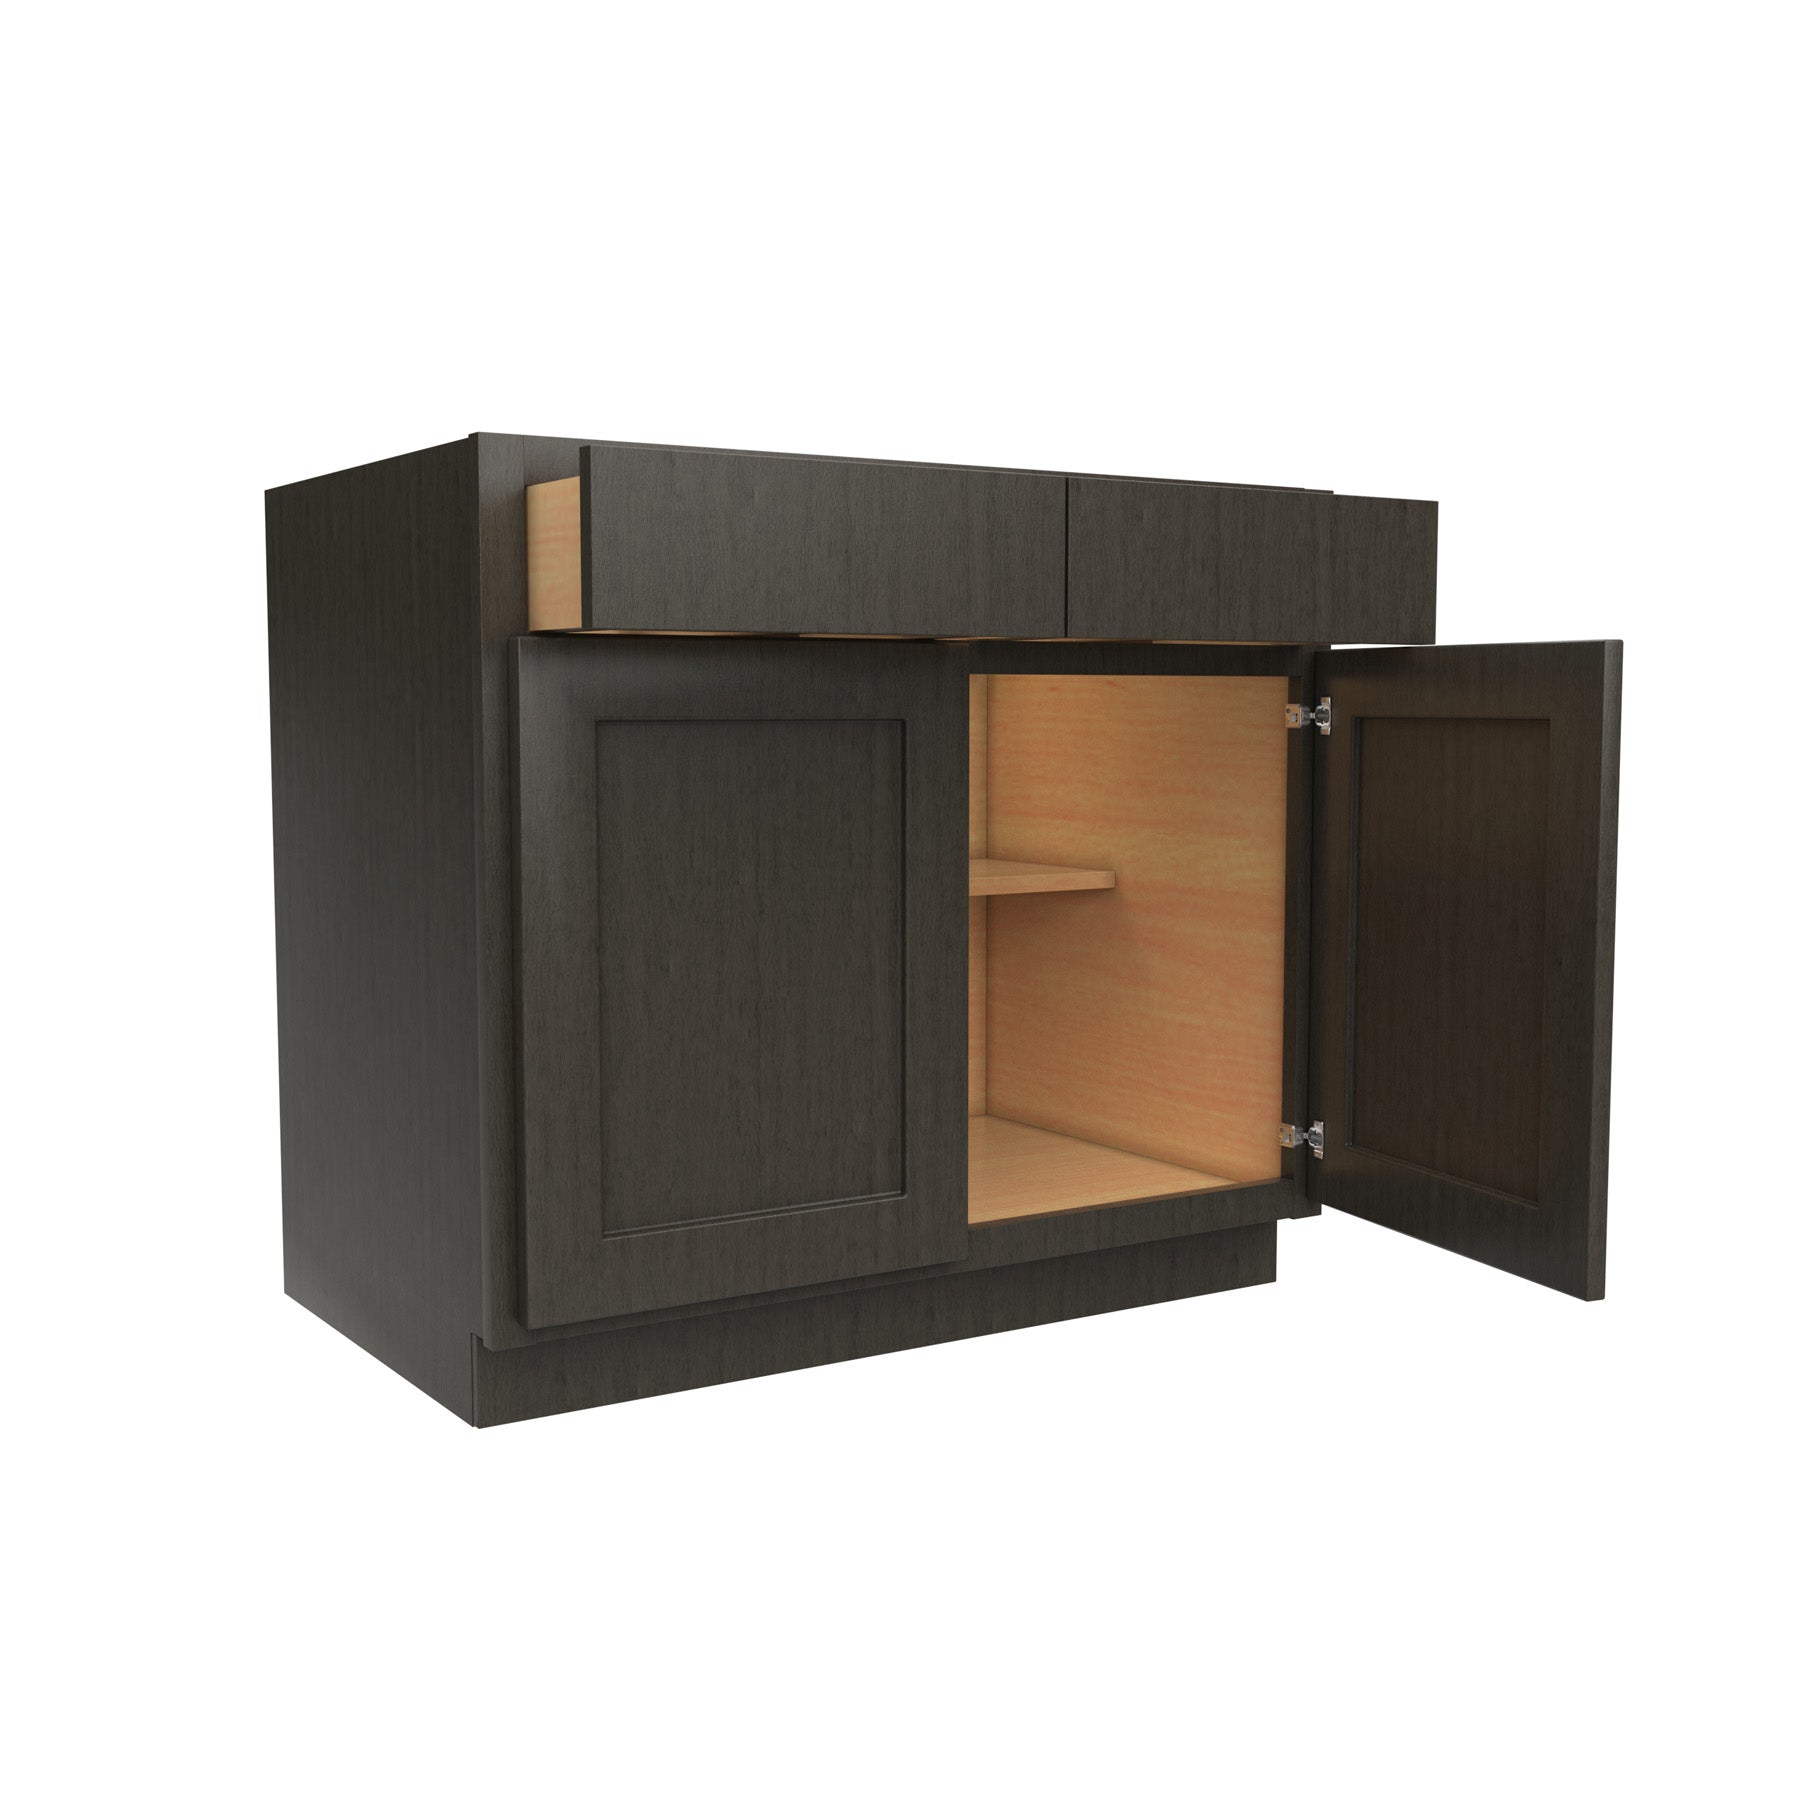 Luxor Smoky Grey - Double Door Base Cabinet | 36"W x 34.5"H x 24"D